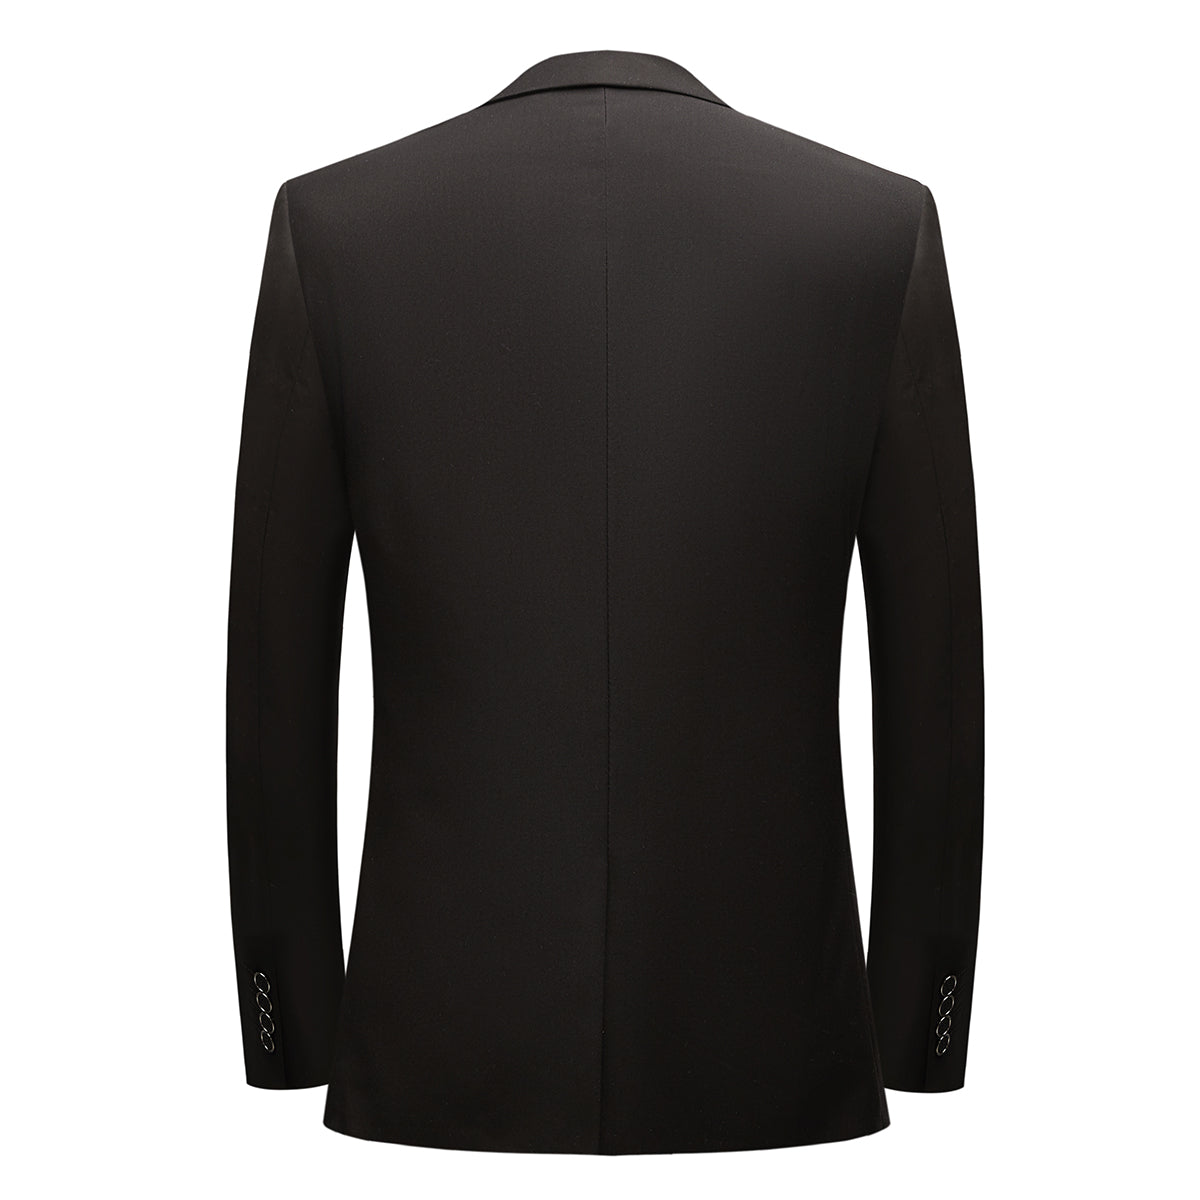 3-Piece One Button Suit Slim Fit Black Suit